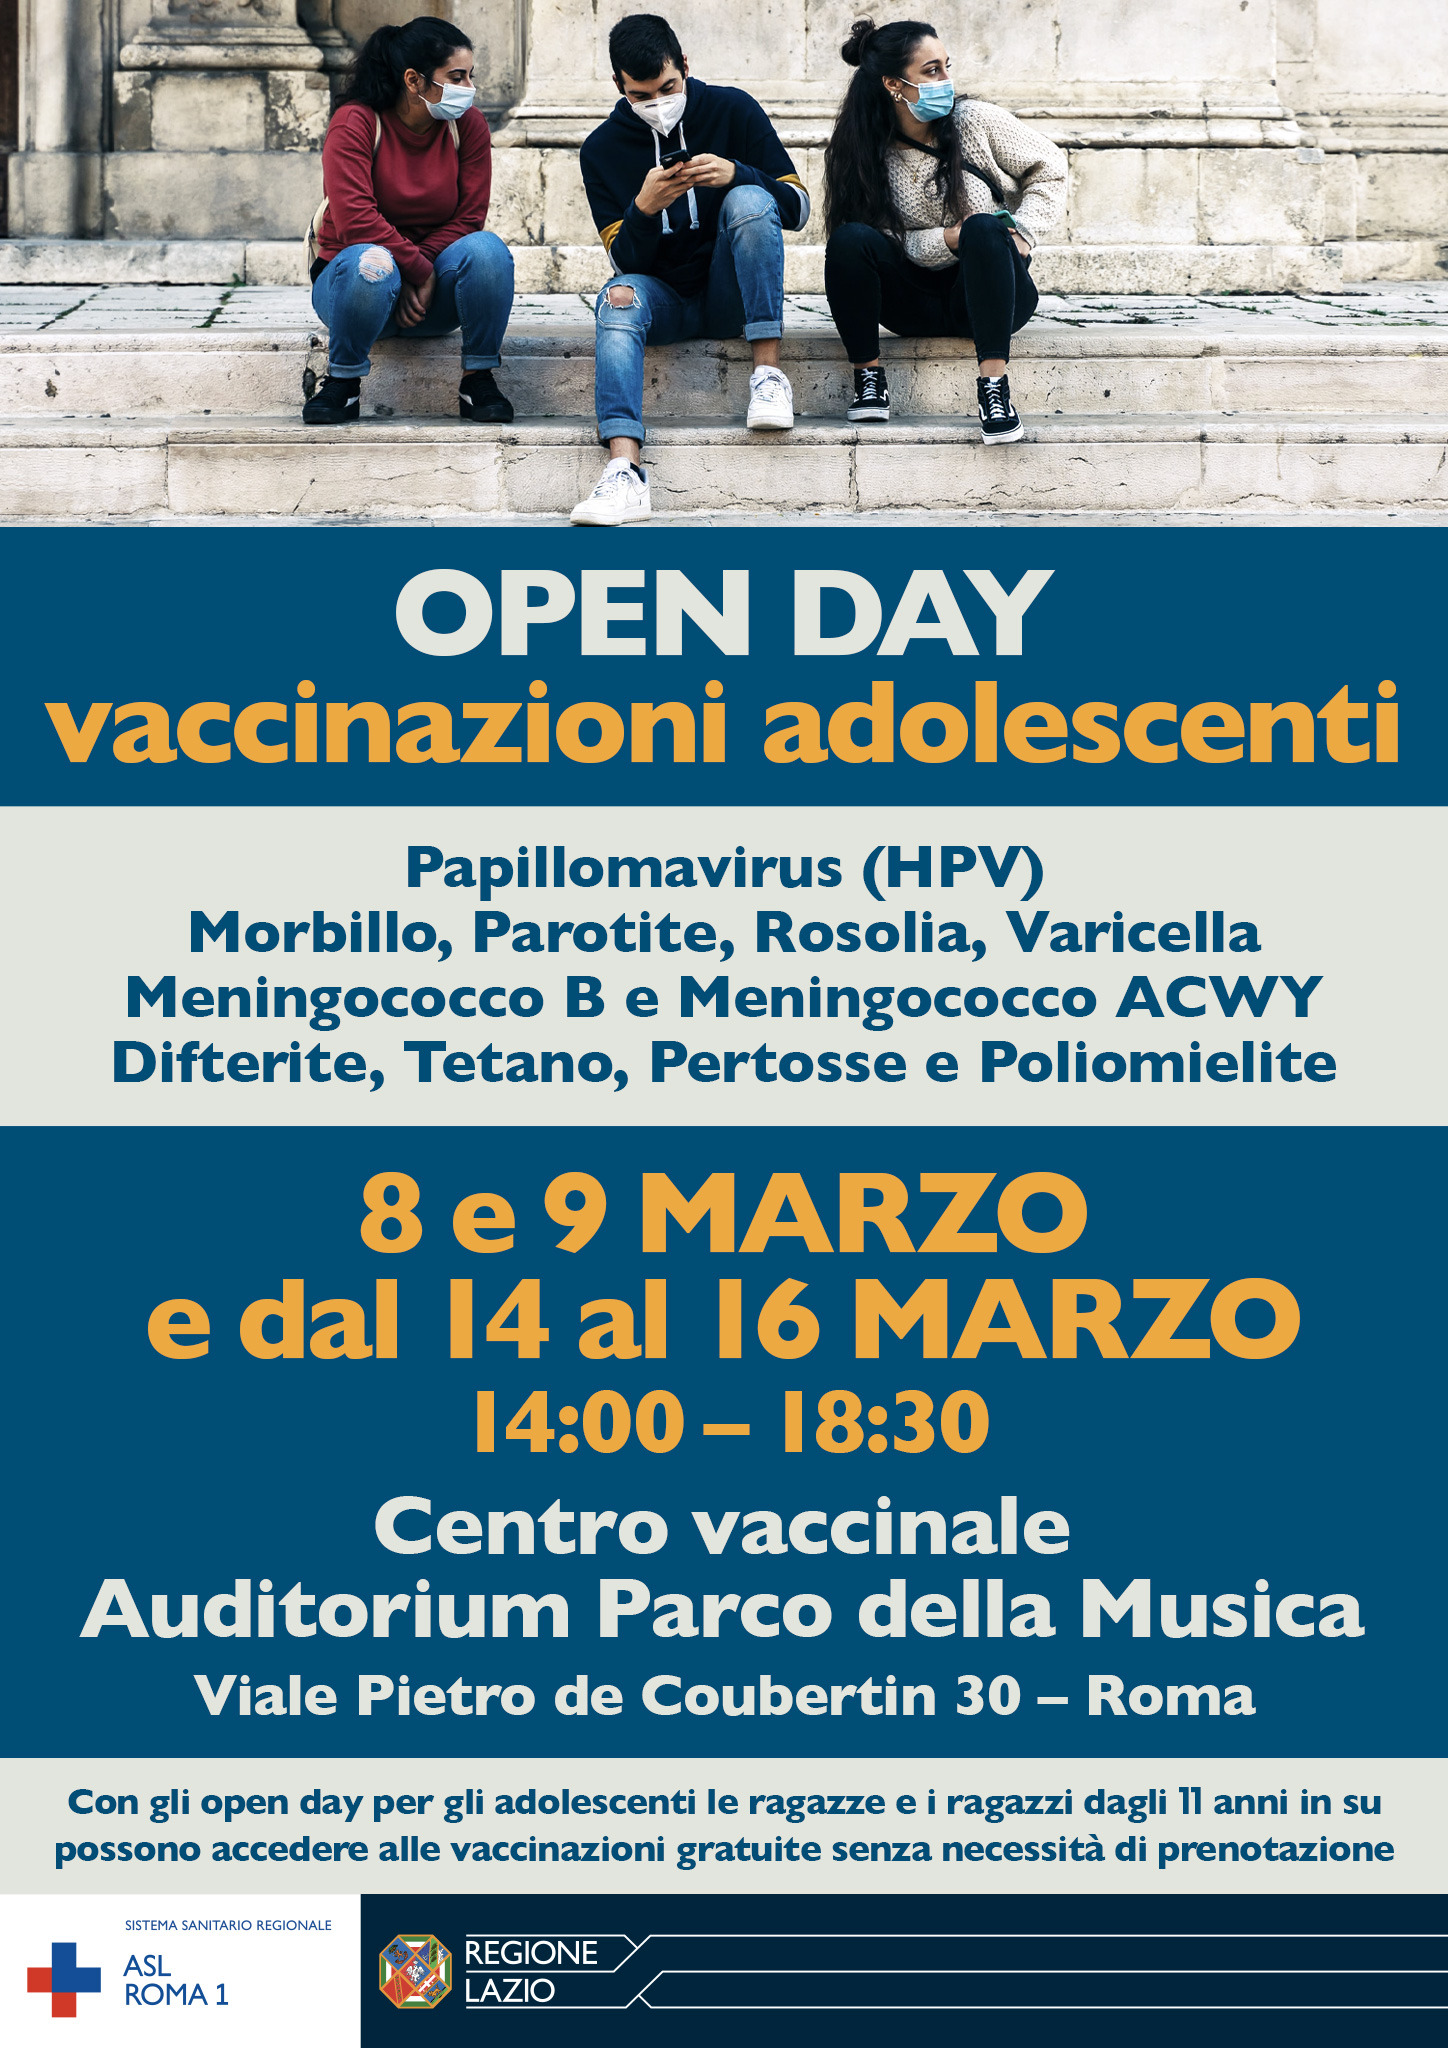 ASL Roma 1 cardvaccinazioniadolescenti D